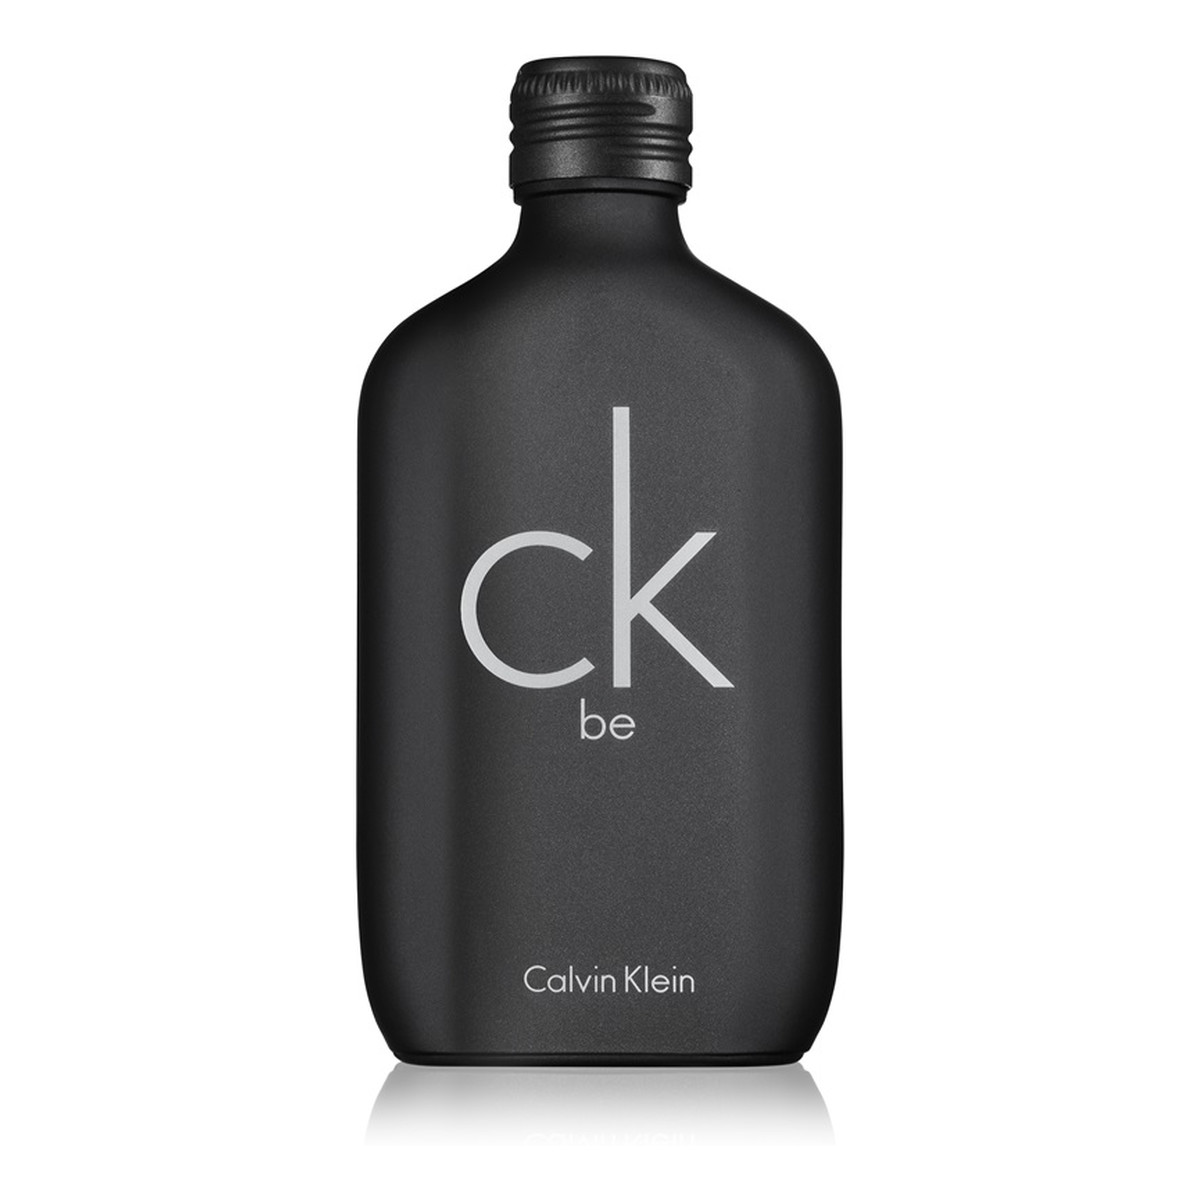 Calvin Klein CK Be woda toaletowa unisex 50ml